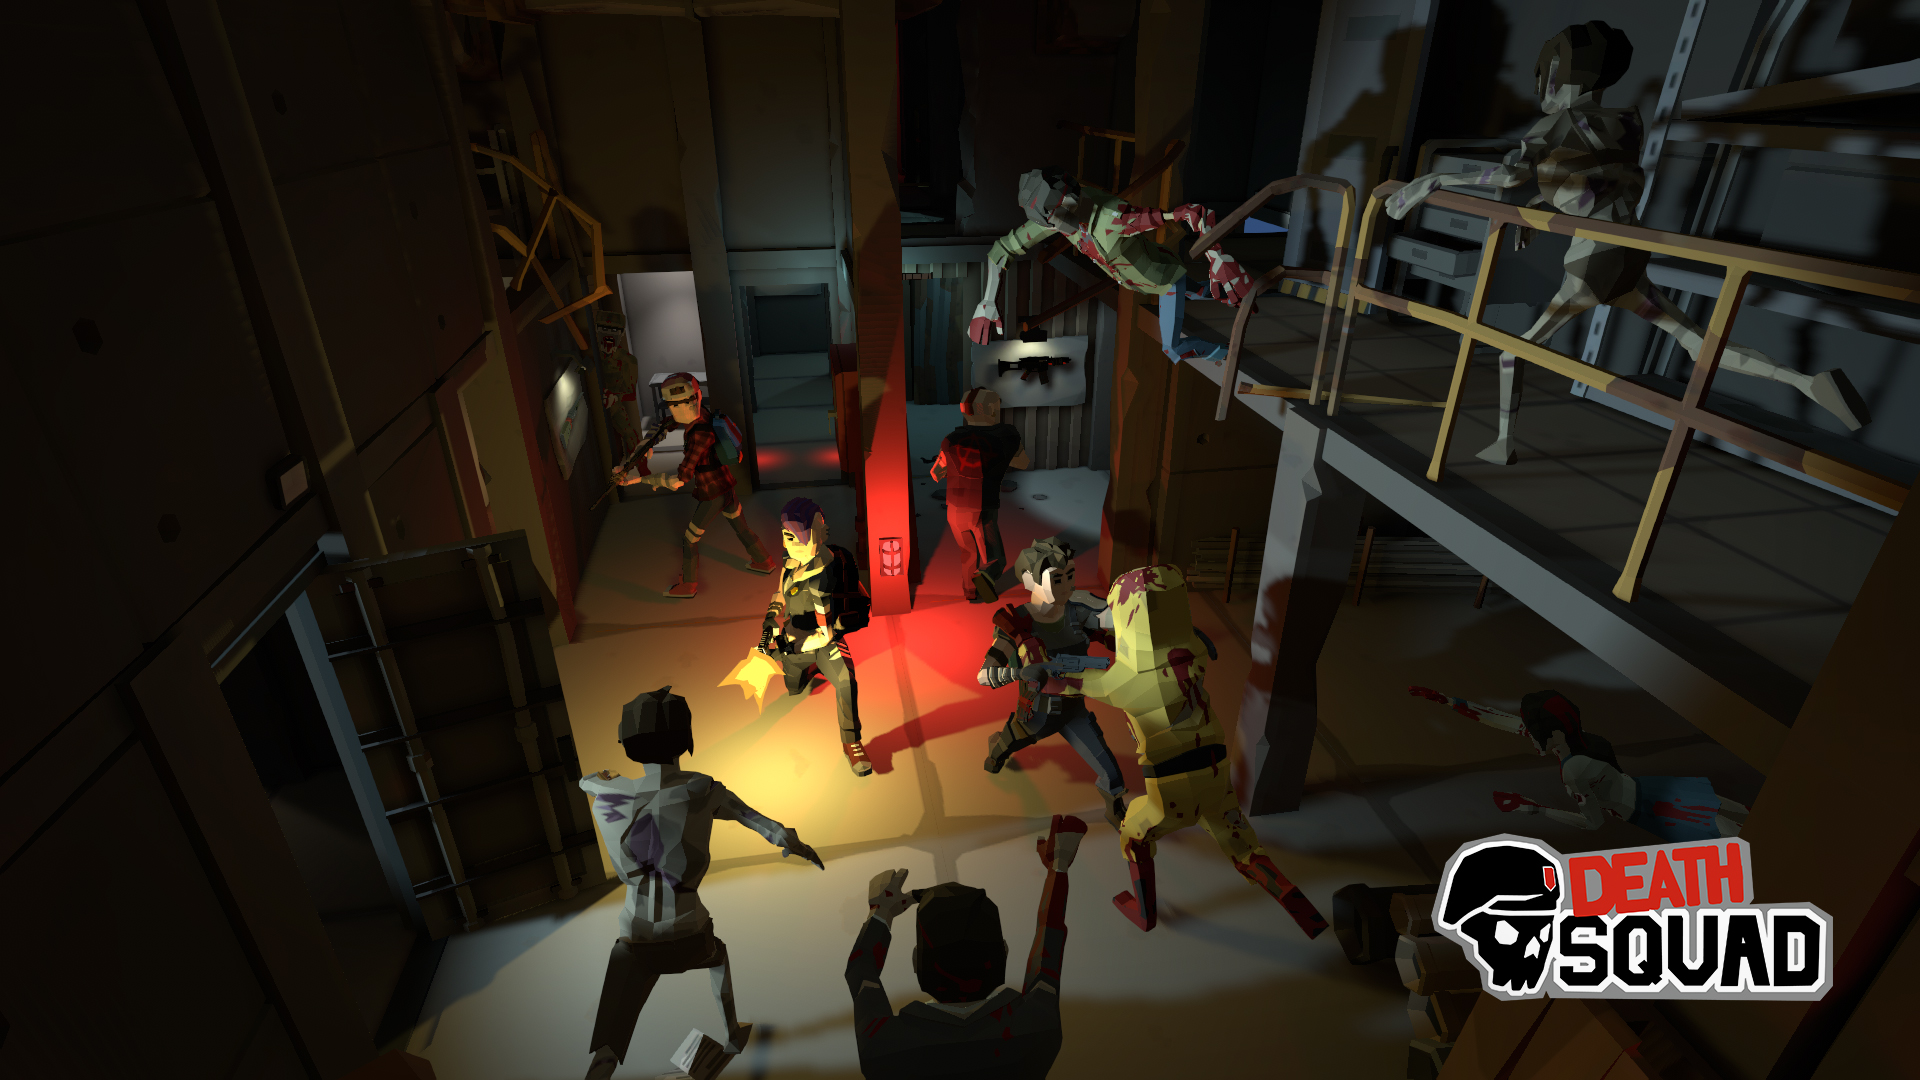 Death Squad, défendez vous contre une invasion zombie en réalité virtuelle avec vos amis